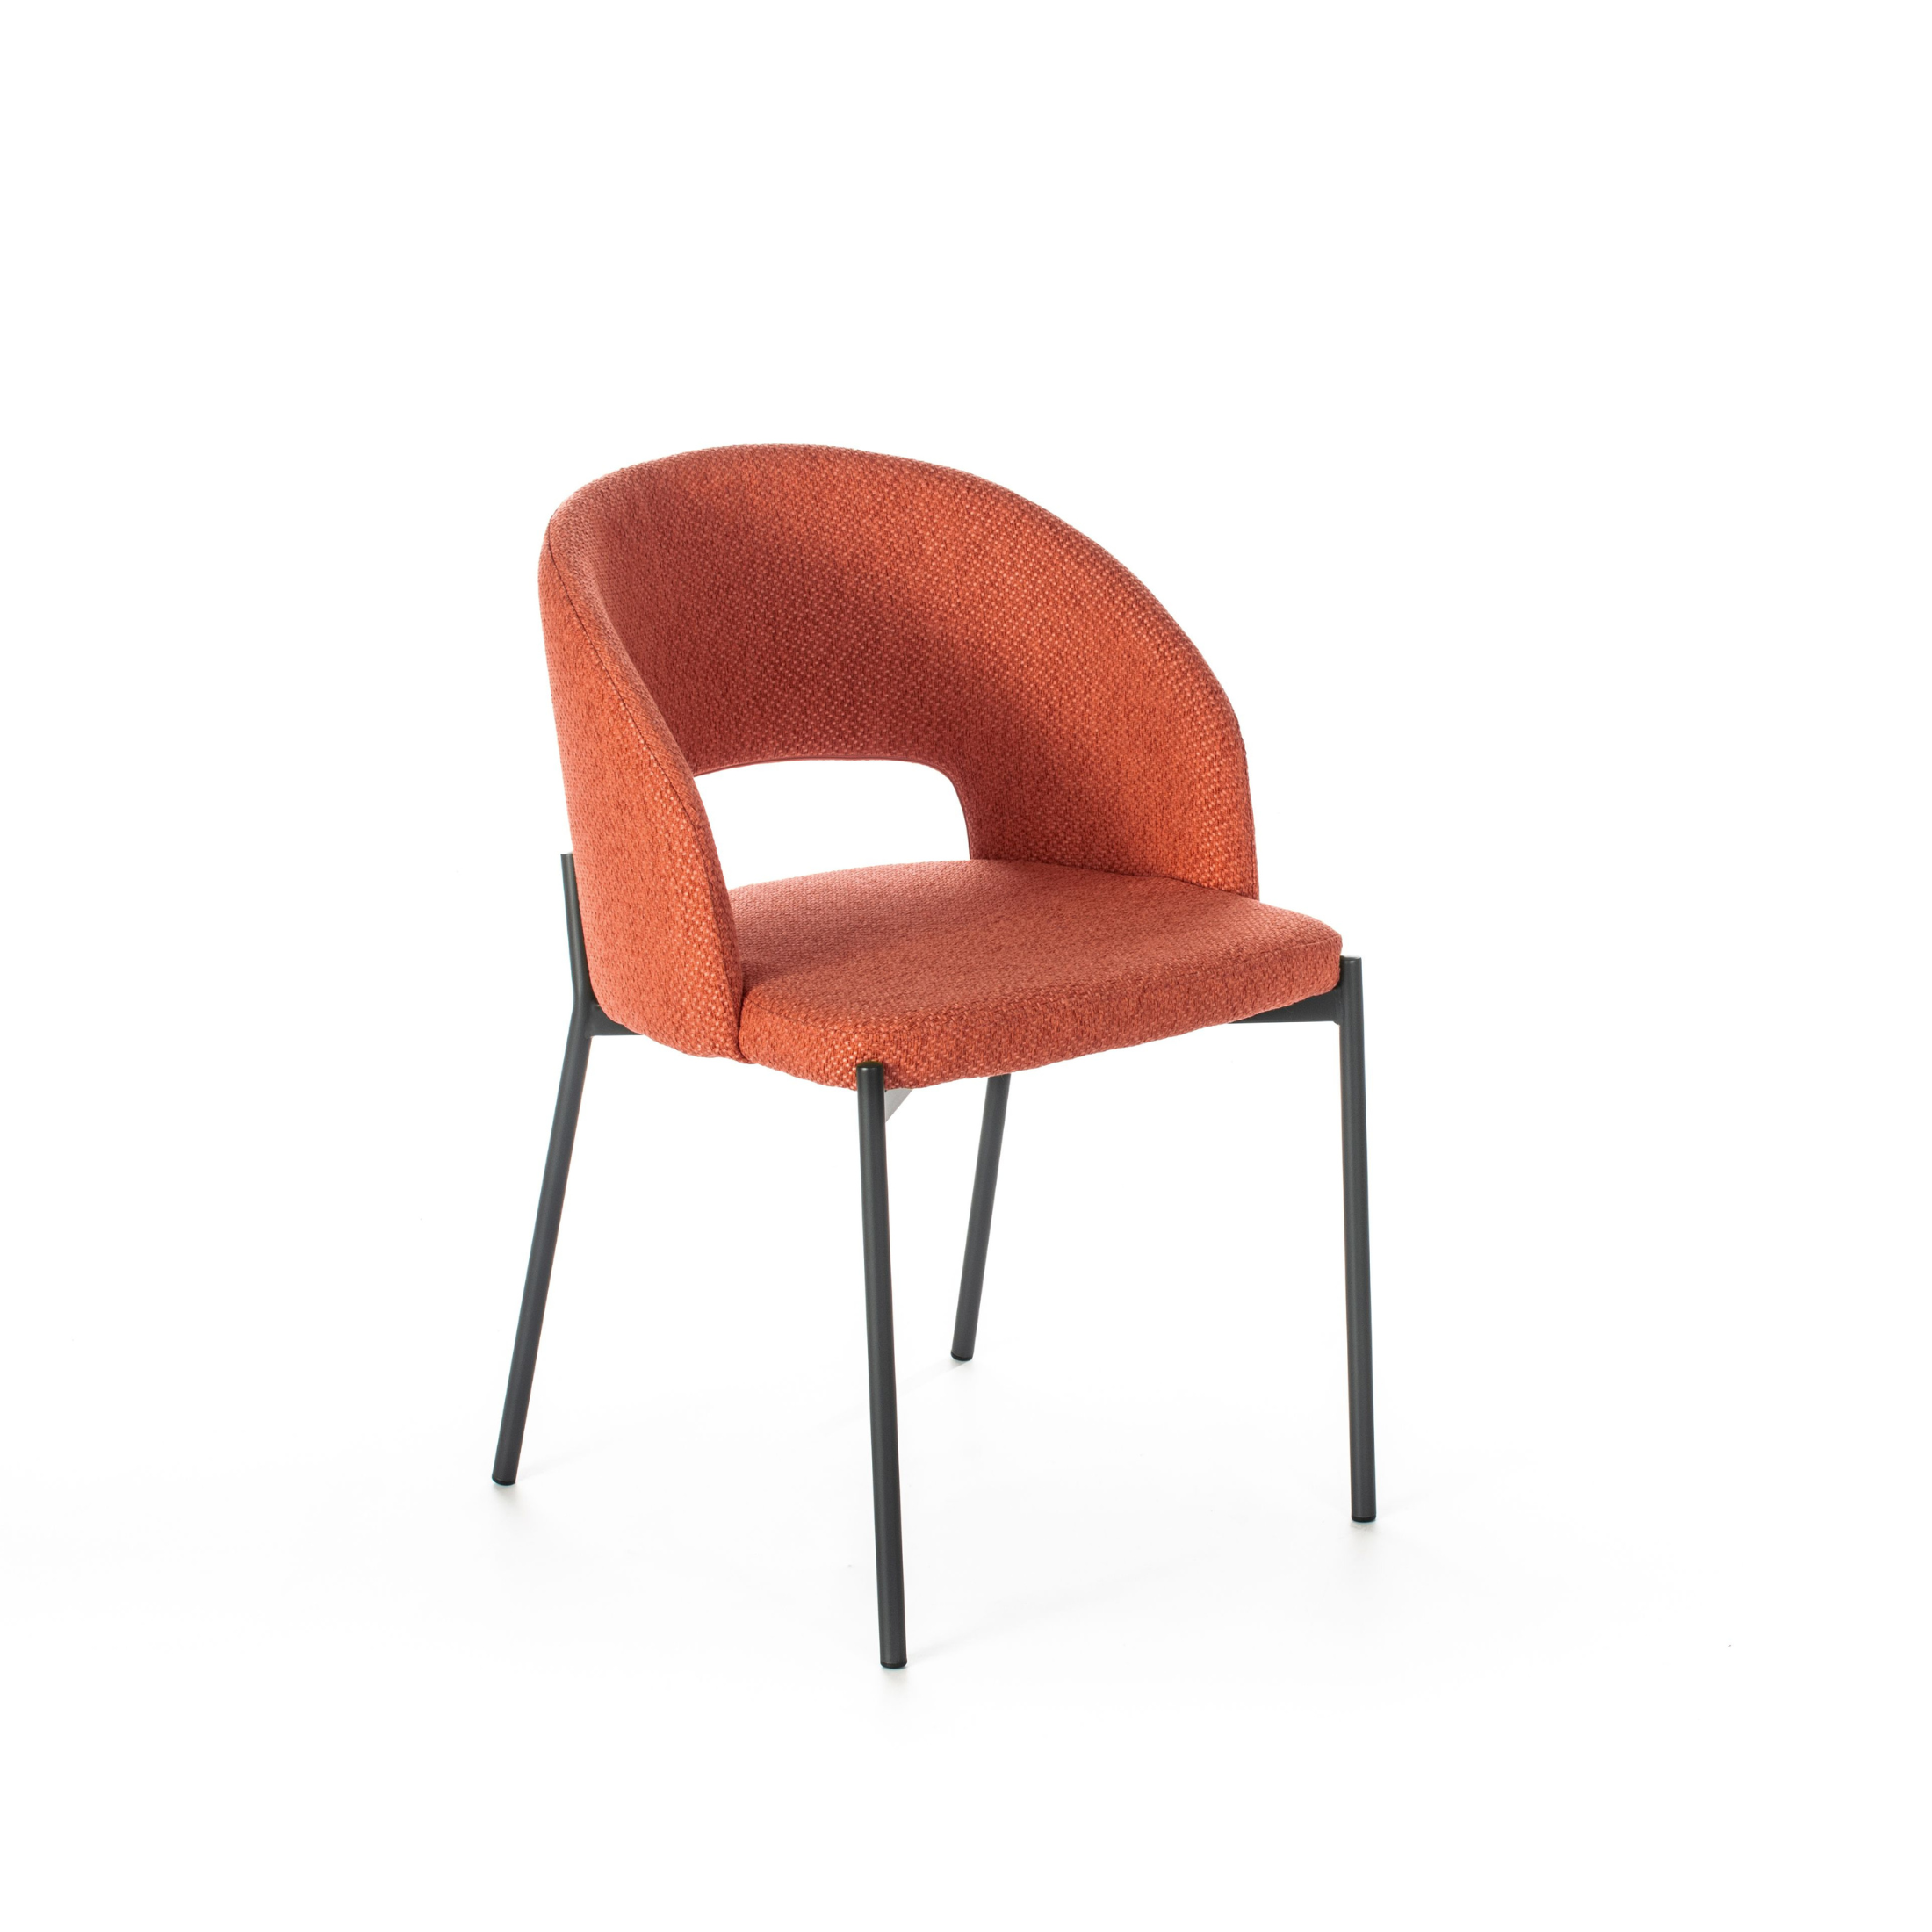 Chaise ronde rembourrée "Greta" fauteuil moderne en tissu 56x52 cm 78,5h